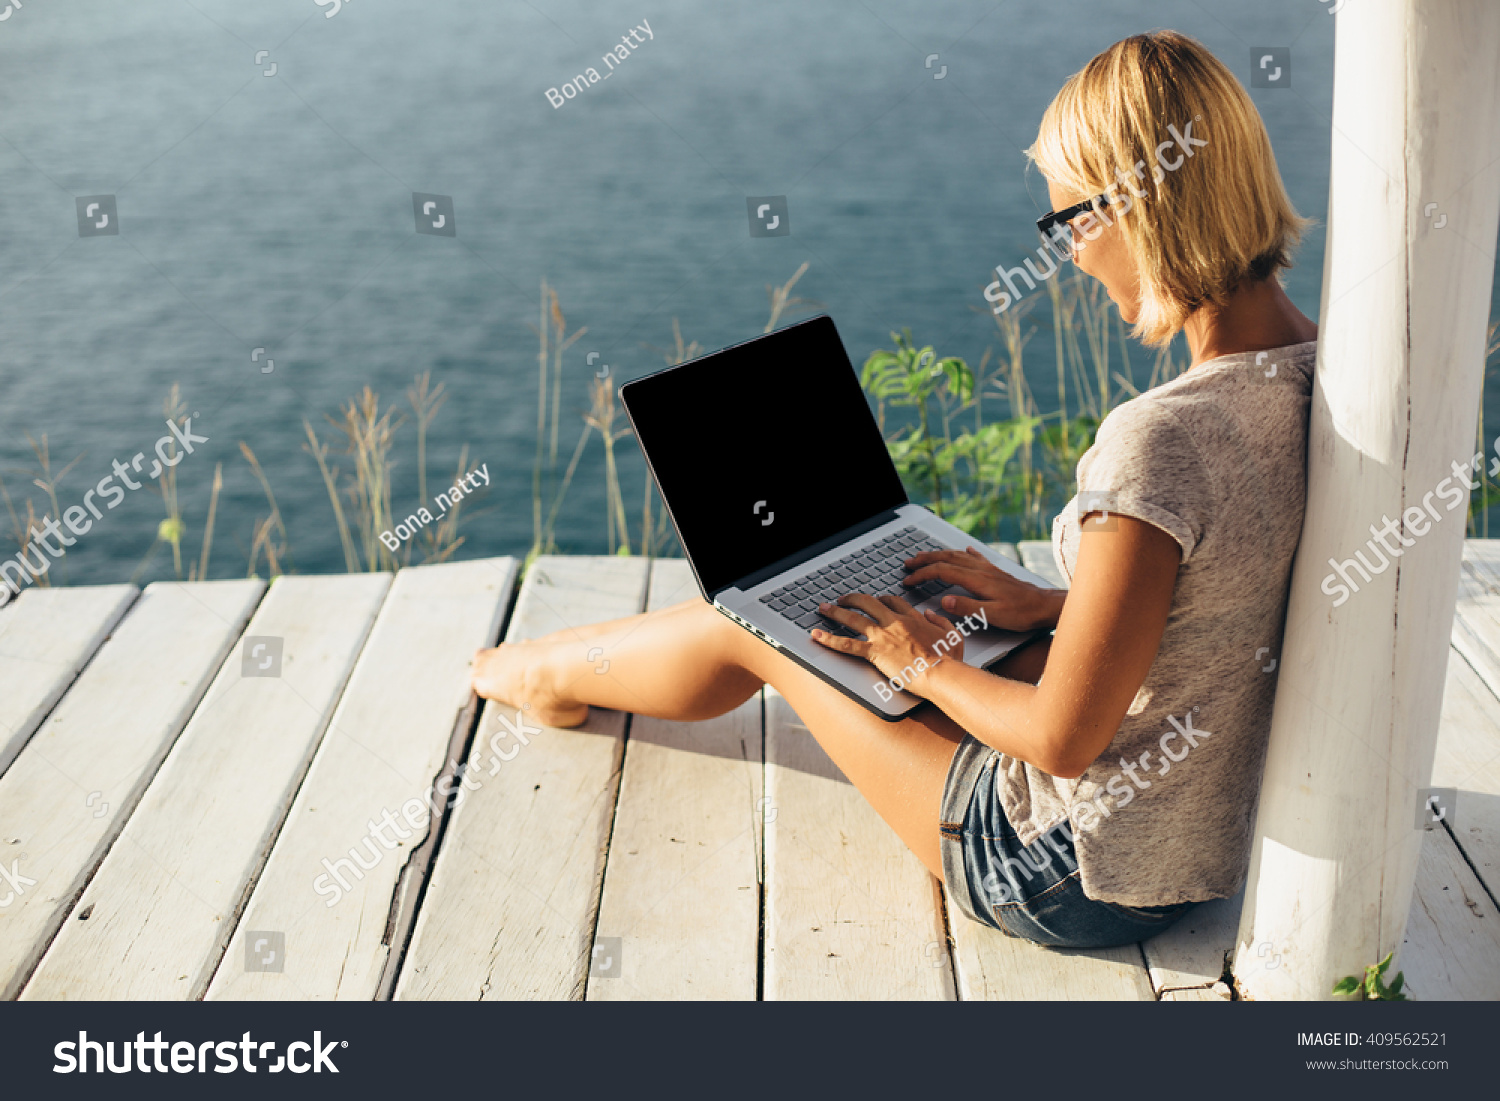 Форум фрилансер. Девушка с ноутом. Девушка с ноутбуком. Девушка за ноутом. Девушка за ноутбуком.